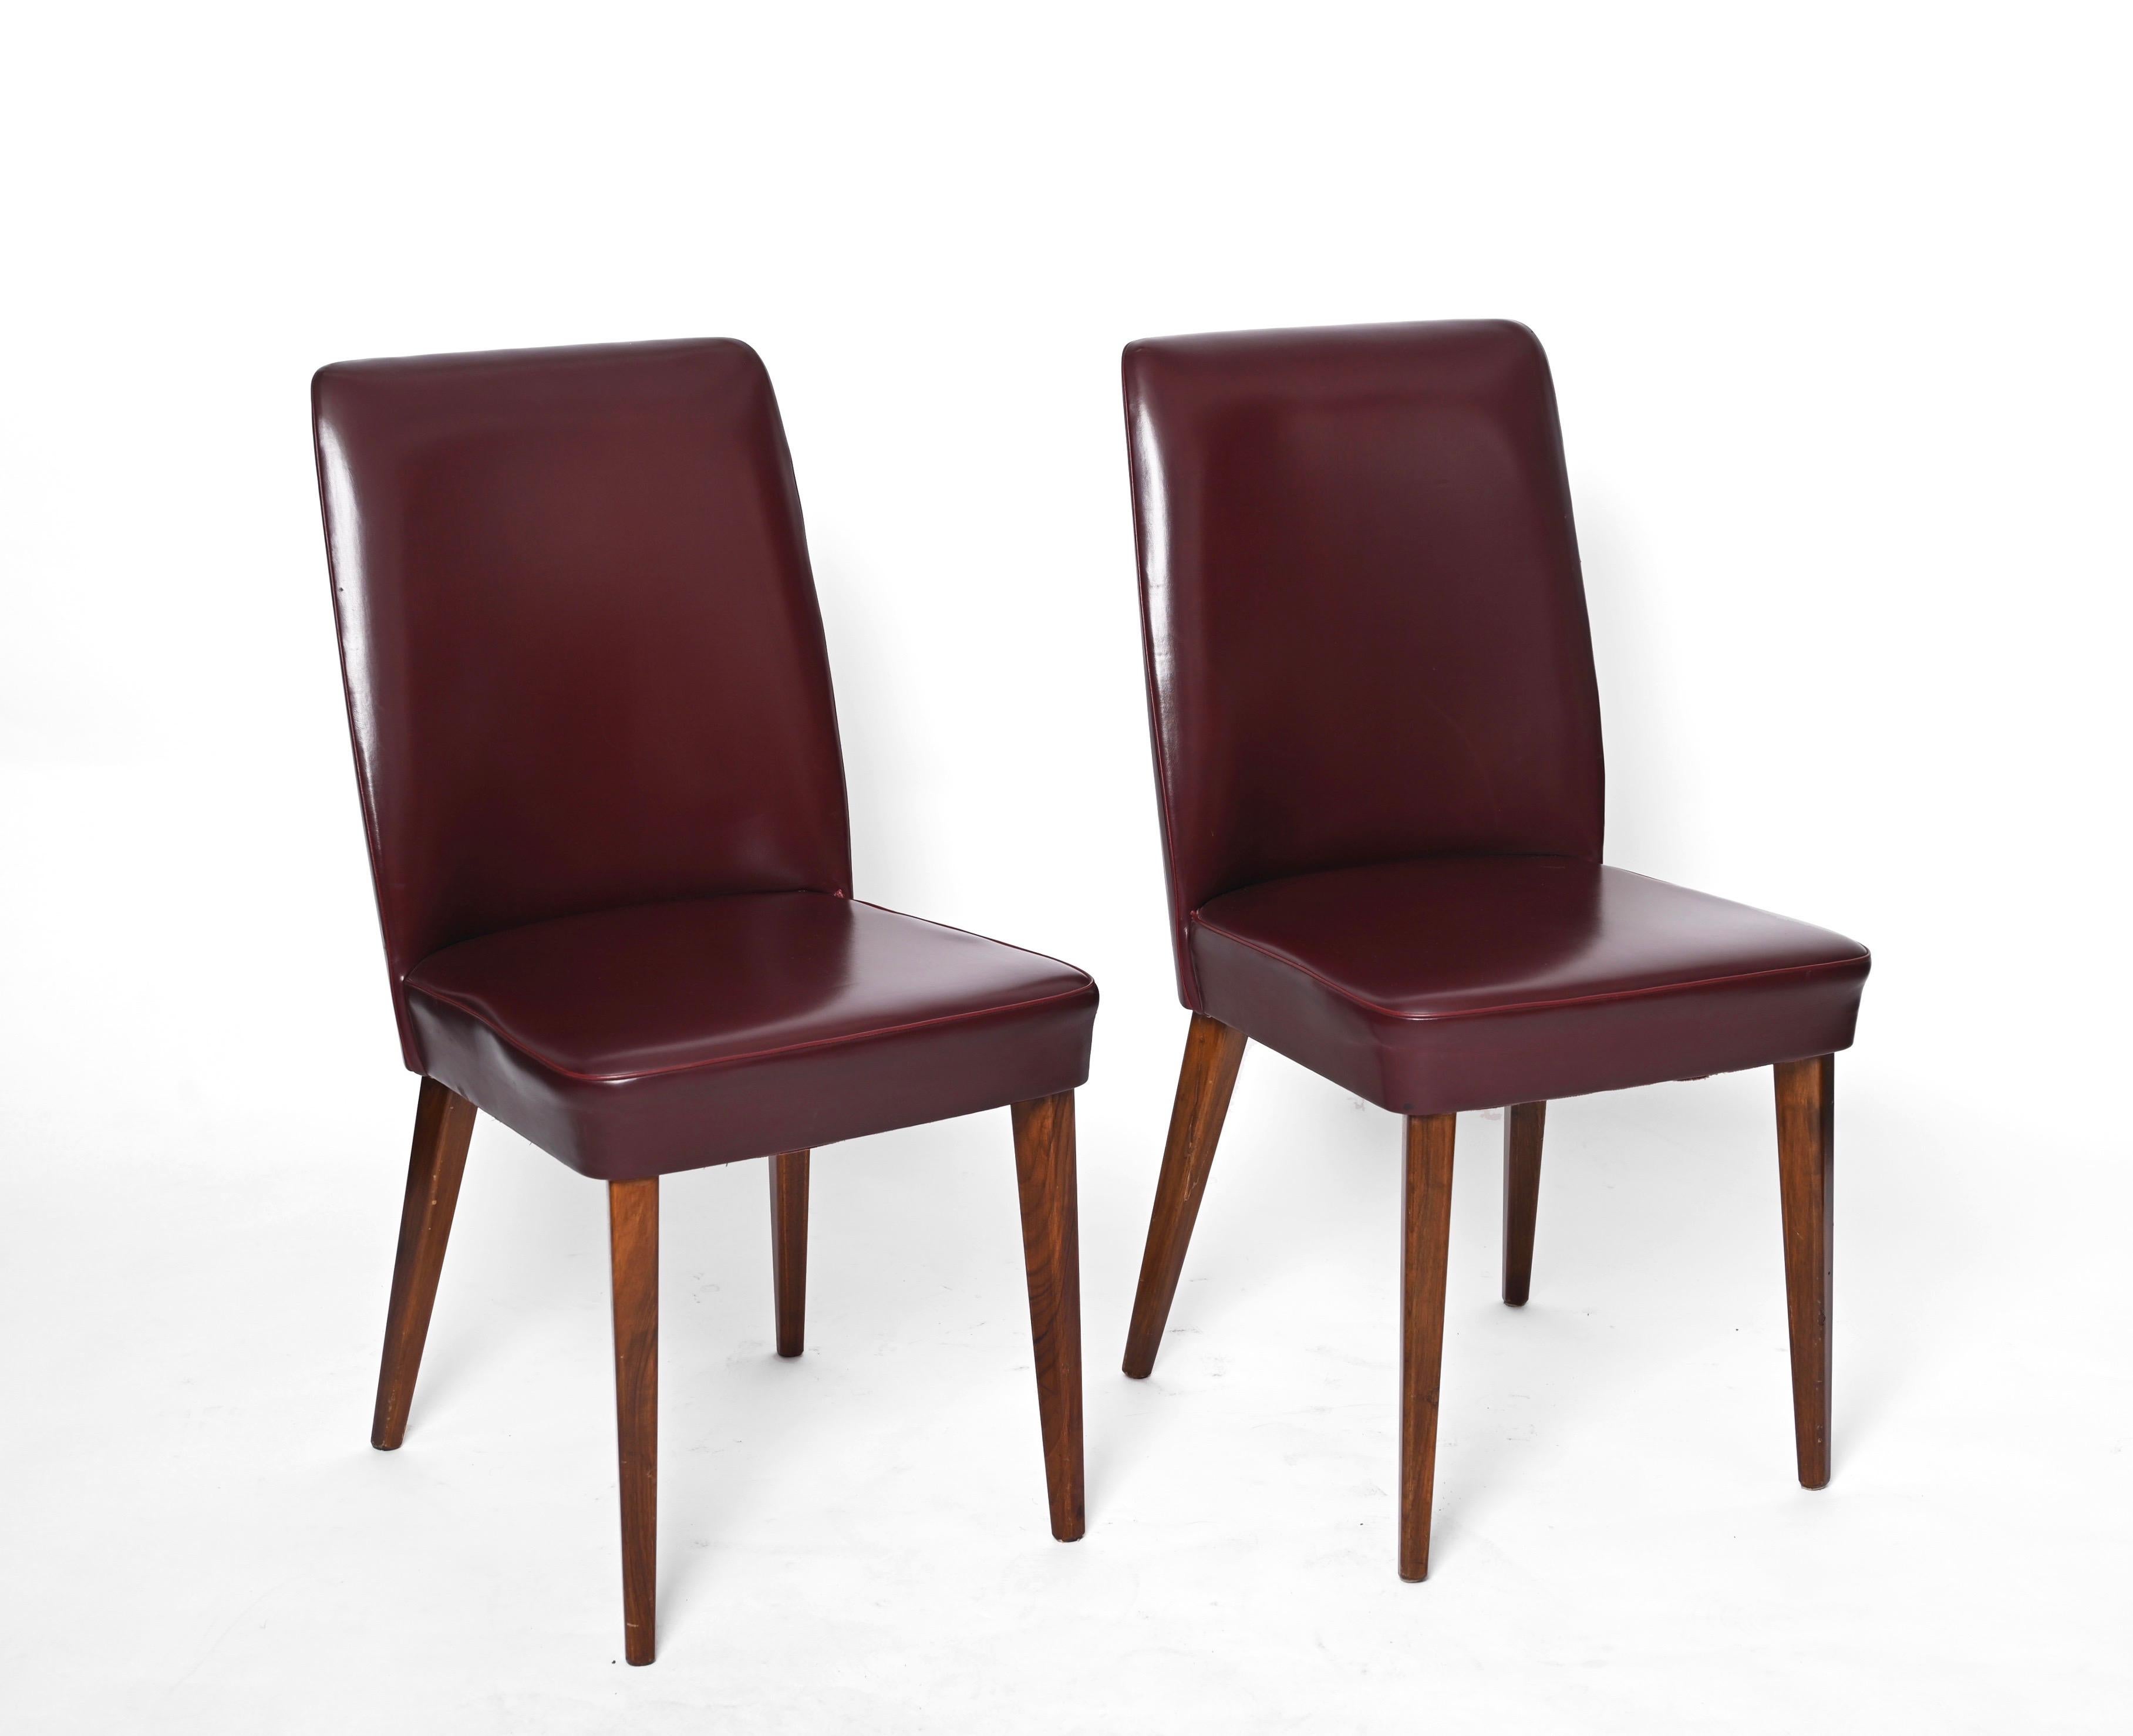 Schöne Paar Himmel Leder Stuhl von Anonima Castelli Bologna Italien. Diese schönen Stühle wurden in den 50er Jahren in Italien hergestellt.

Die Stühle sind gepolstert und mit dem originalen bordeauxfarbenen Leder bezogen und haben vier Beine aus